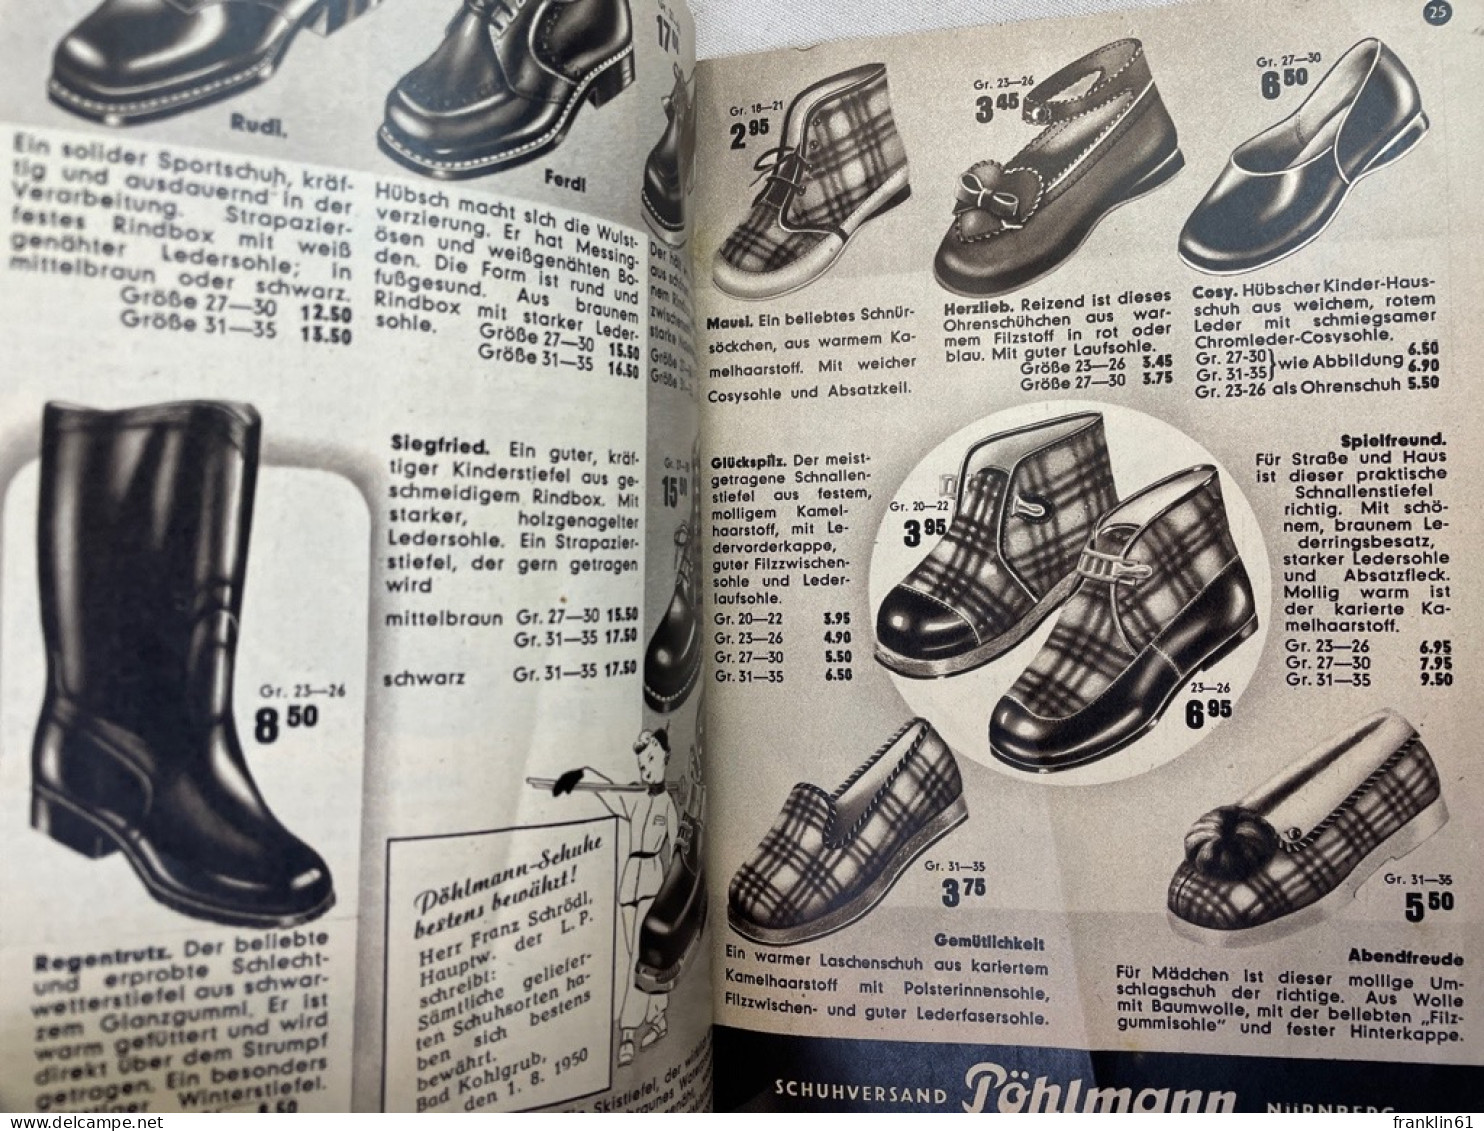 Verkaufskatalog Pöhlmann Schuhe Nürnberg 1950. Ihr Schuhberater.